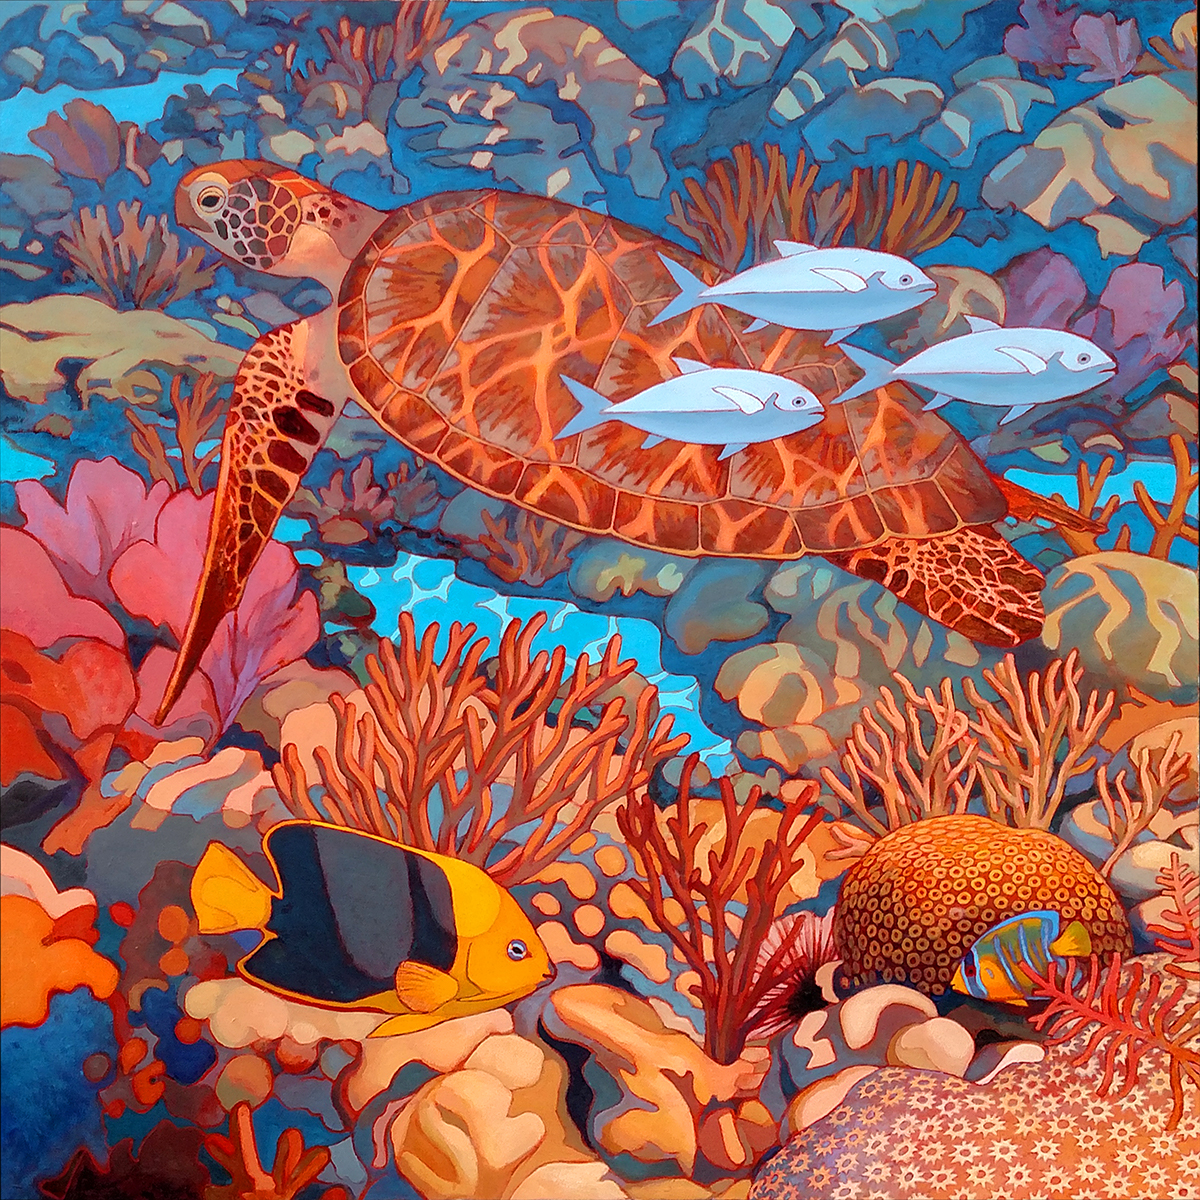 Coral Reef Art On Tuckerman Reef Underwater Scenes Coral Reef Fish And Patterns Of Light